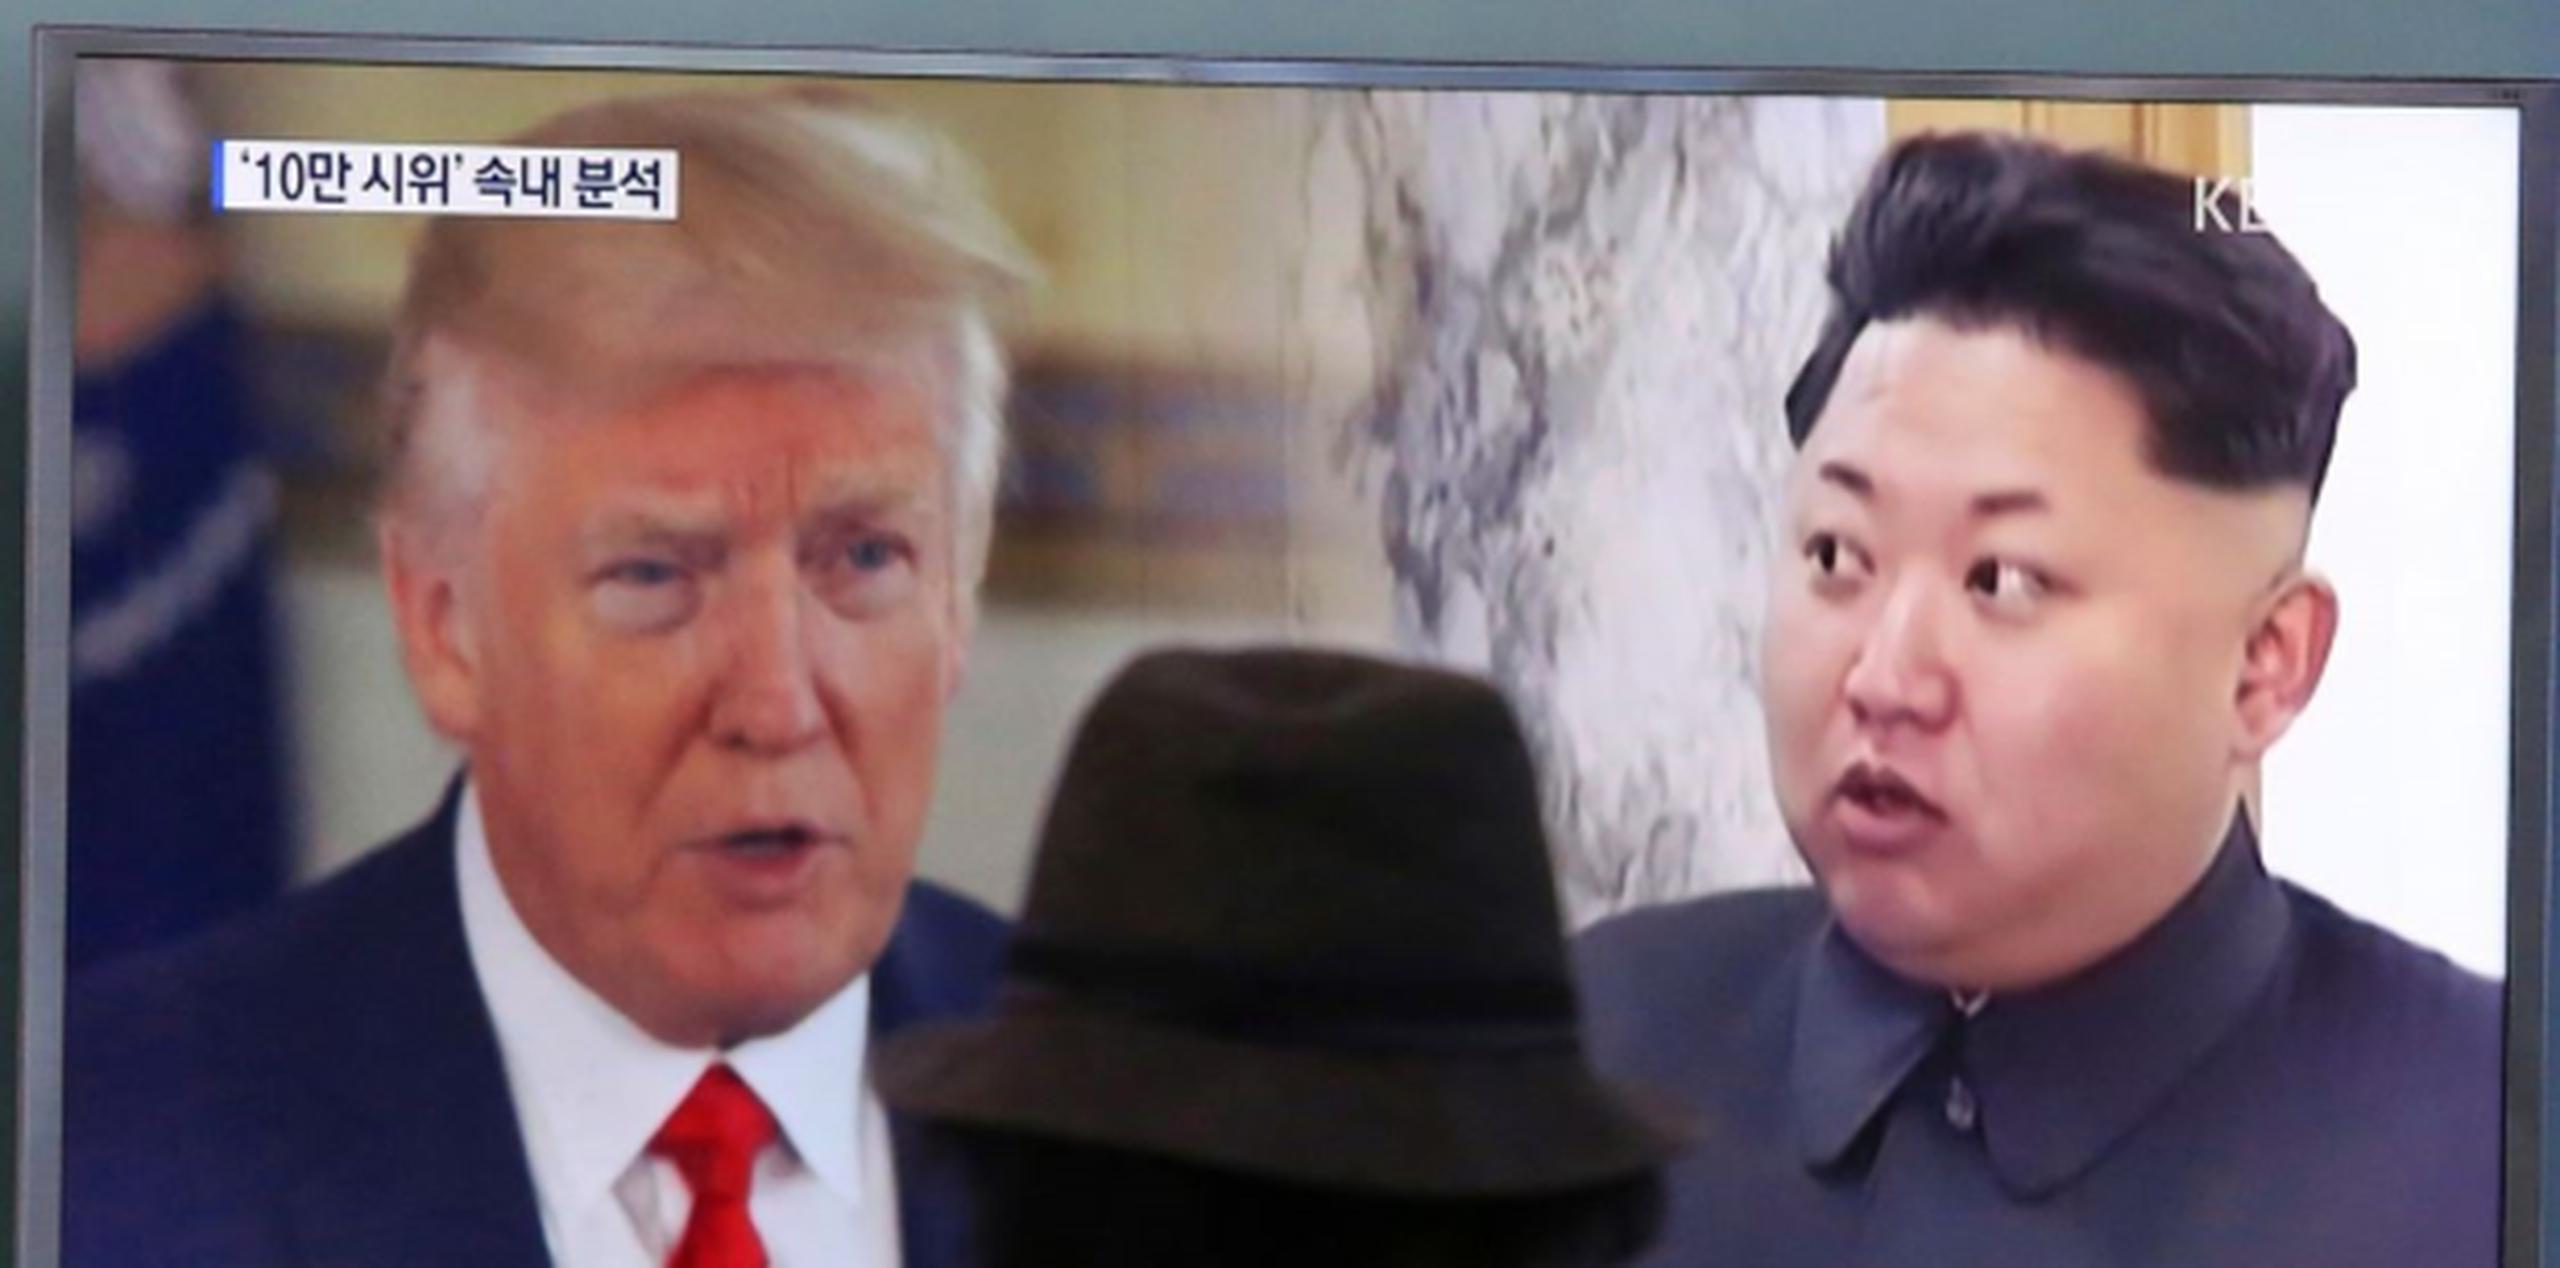 En febrero pasado, Corea del Sur pidió a EE.UU. que volviera a incluir a Pyongyang en esa lista negra a raíz del asesinato en Malasia de Kim Jong-nam, hermano mayor del líder norcoreano, Kim Jong-un. (AP)